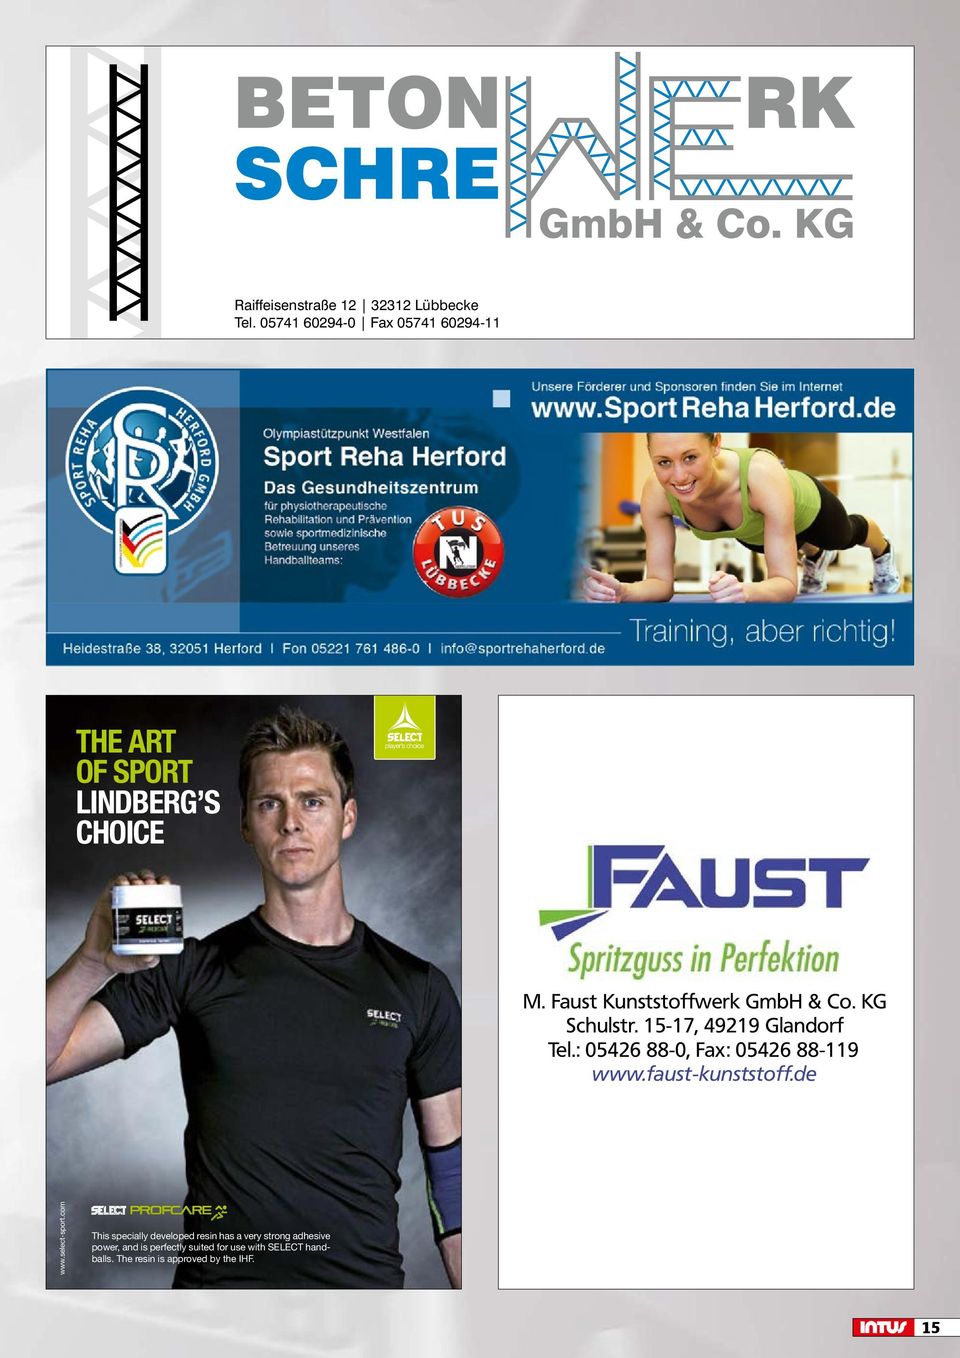 15-17, 49219 Glandorf Tel.: 05426 88-0, Fax: 05426 88-119 www.faust-kunststoff.de www.select-sport.